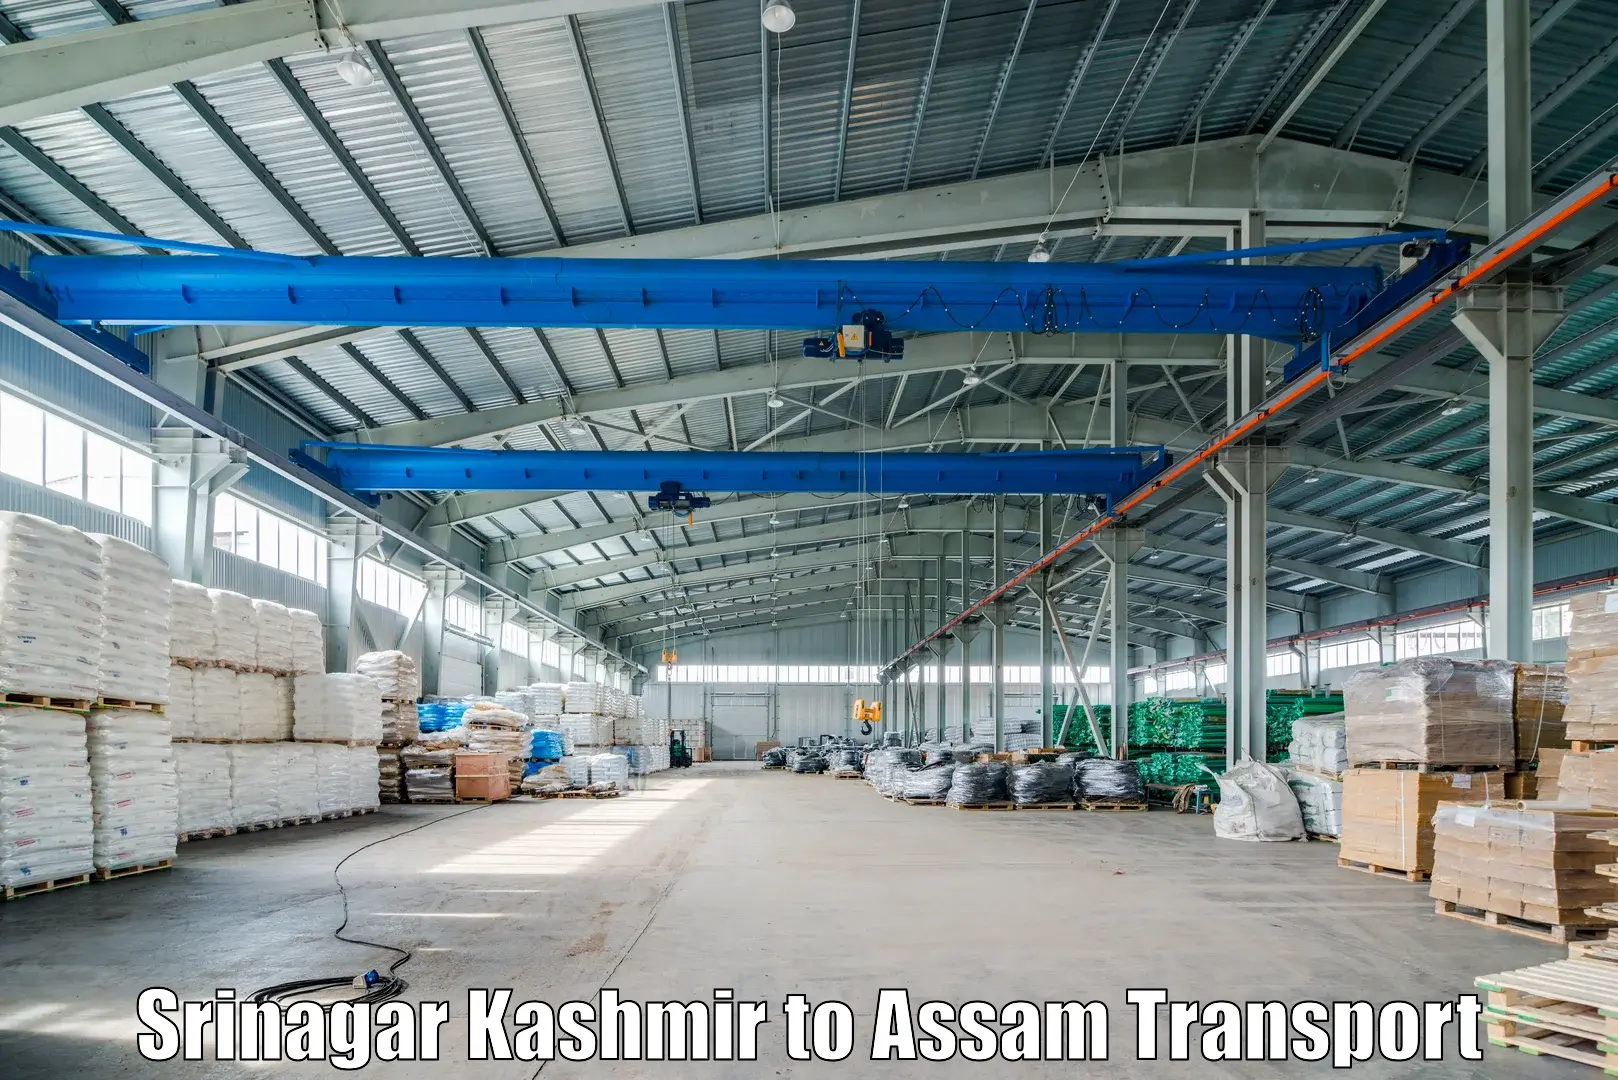 Shipping partner Srinagar Kashmir to Banderdewa